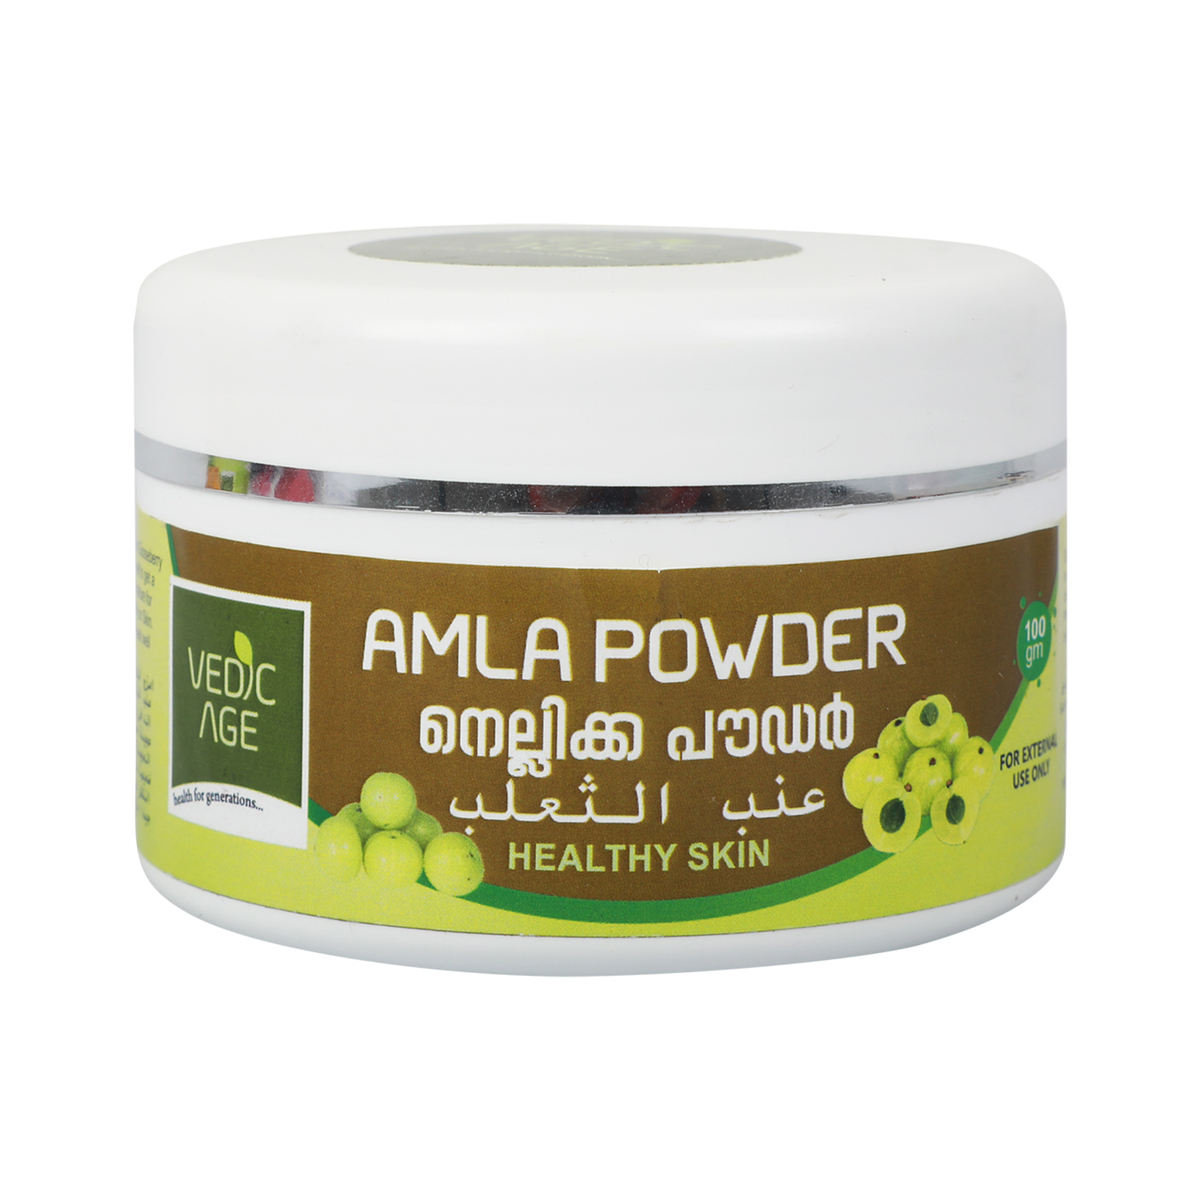 Vedic Age Amala Powder for Healthy Skin, 100 g